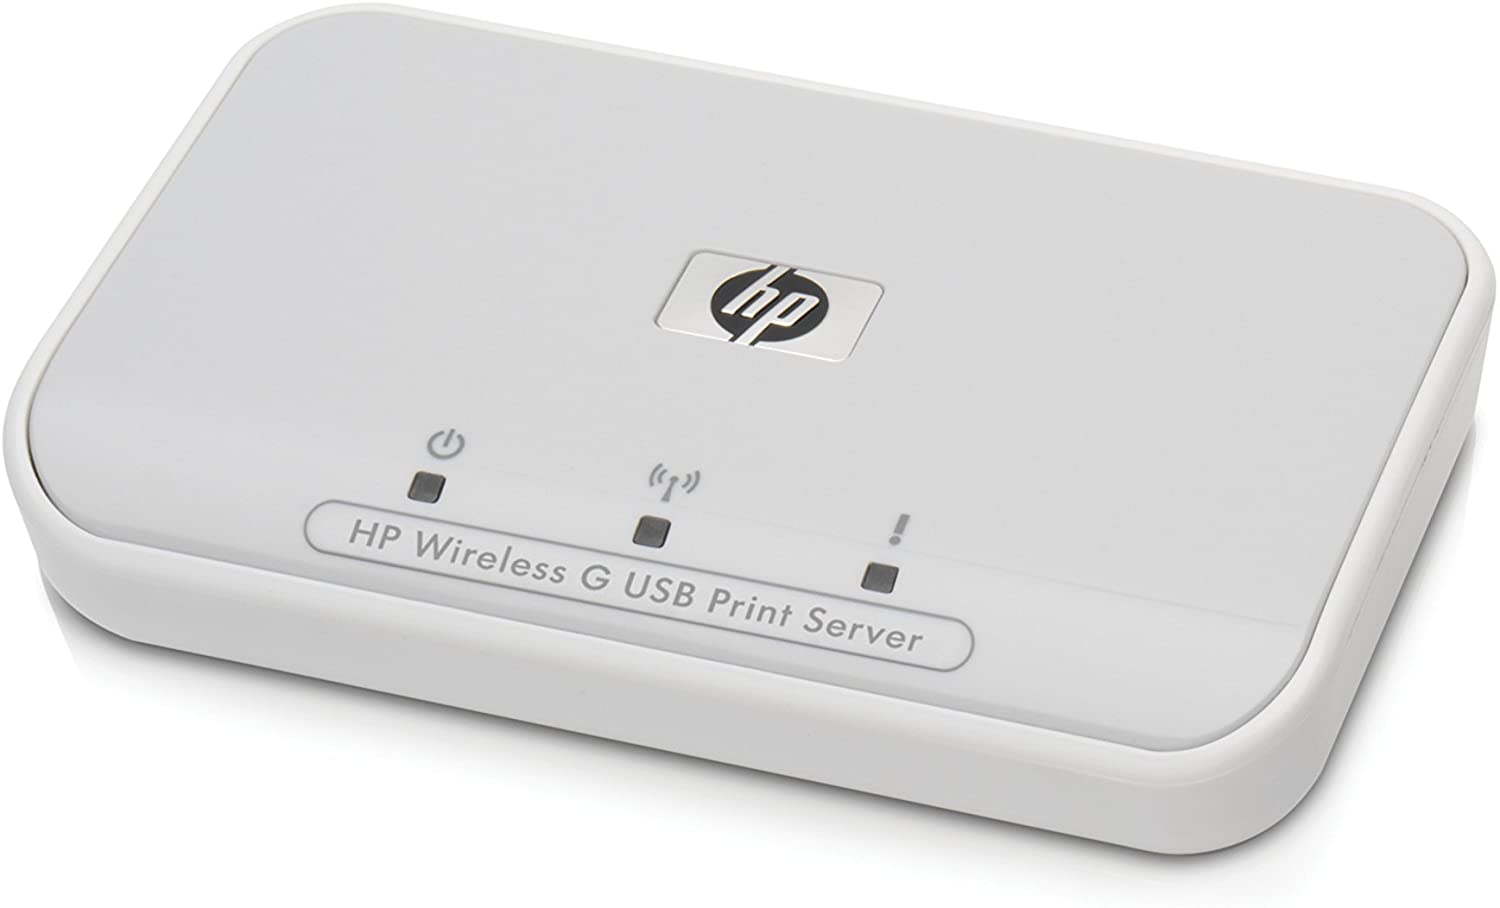 hp wireless g универсальный сервер печати с последовательной шиной mac